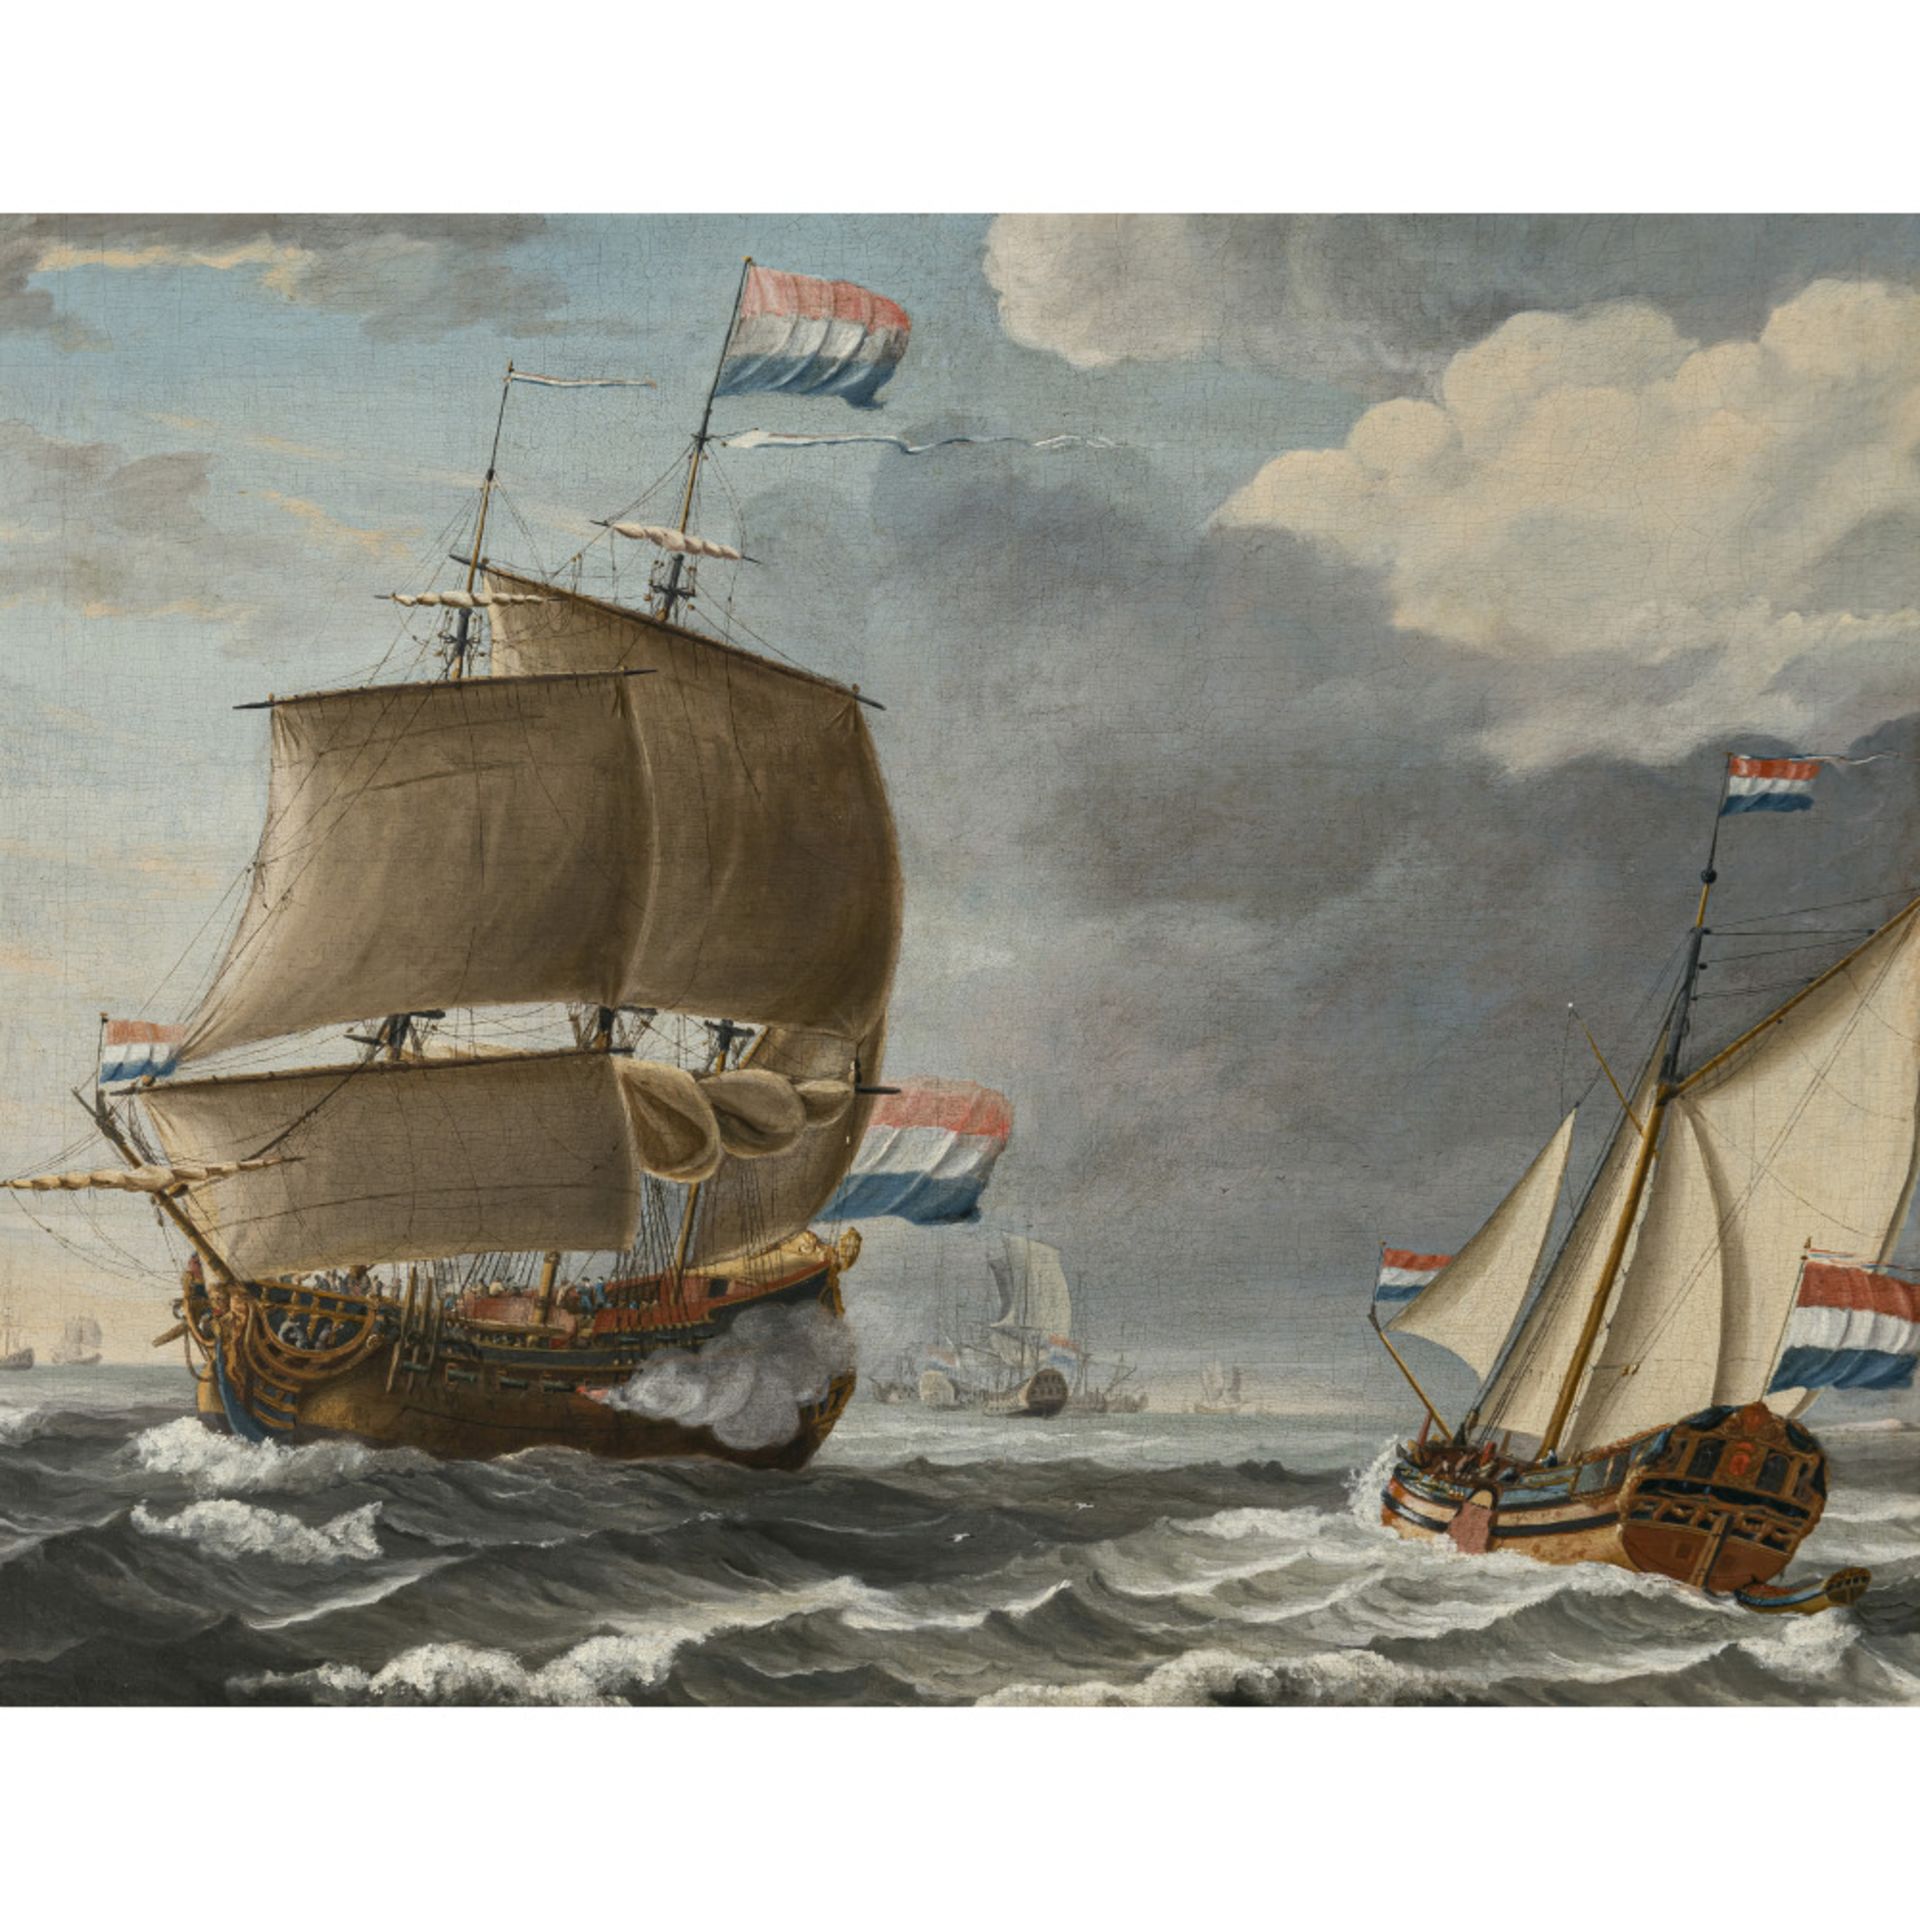 Niederlande (Lieve Verschuier, 1627 Rotterdam - 1686 ebenda, ?) 17th century - Navy